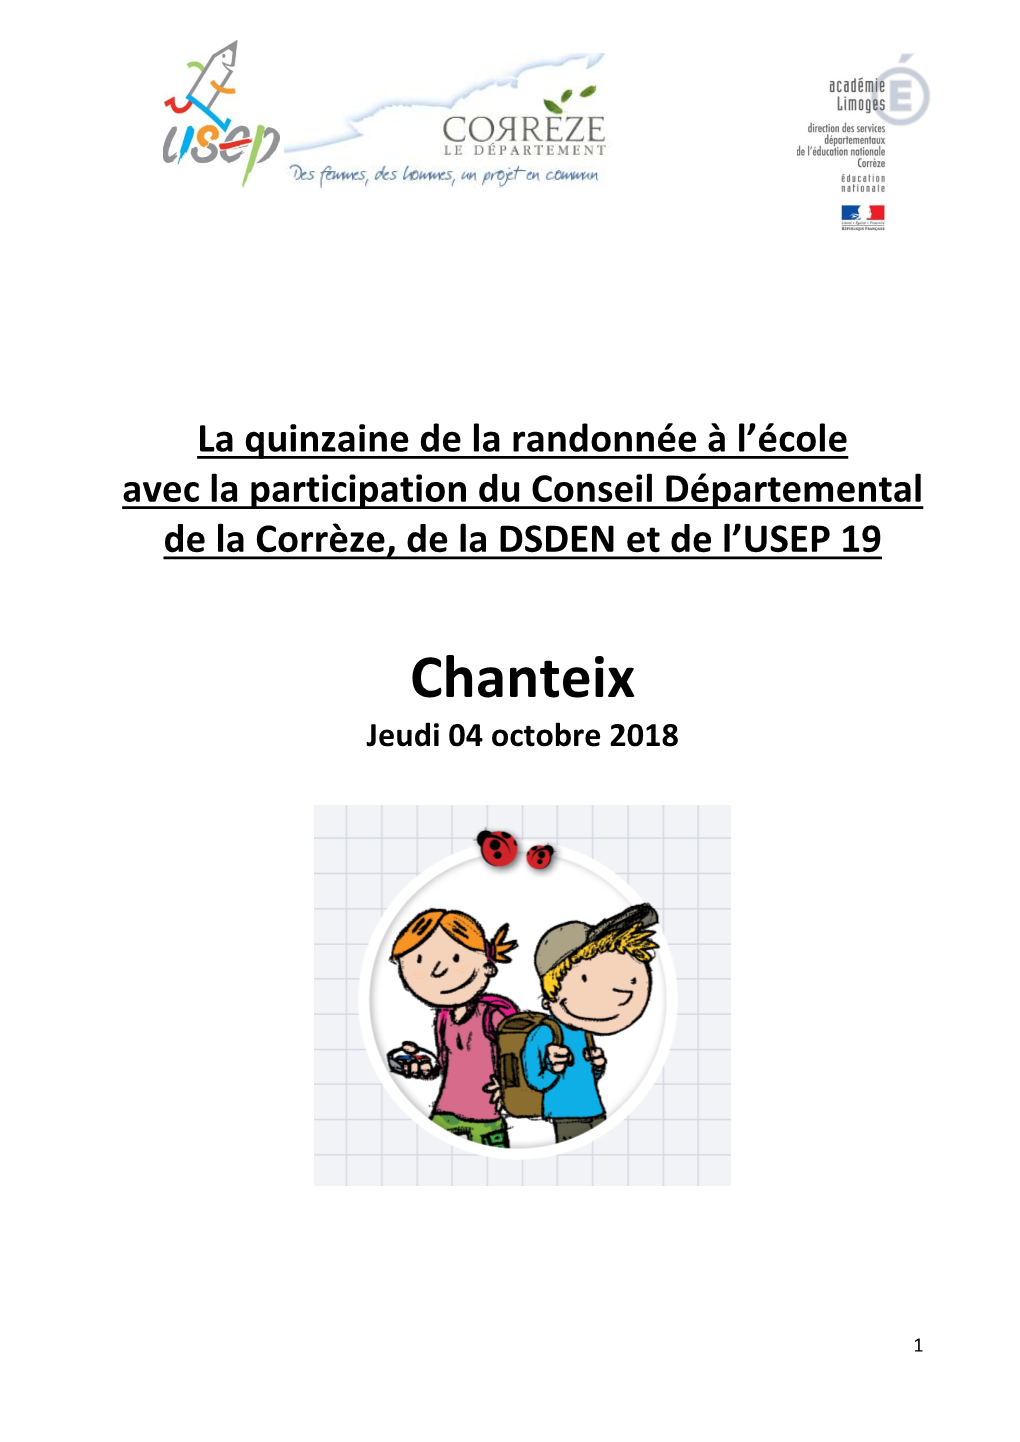 Chanteix Jeudi 04 Octobre 2018